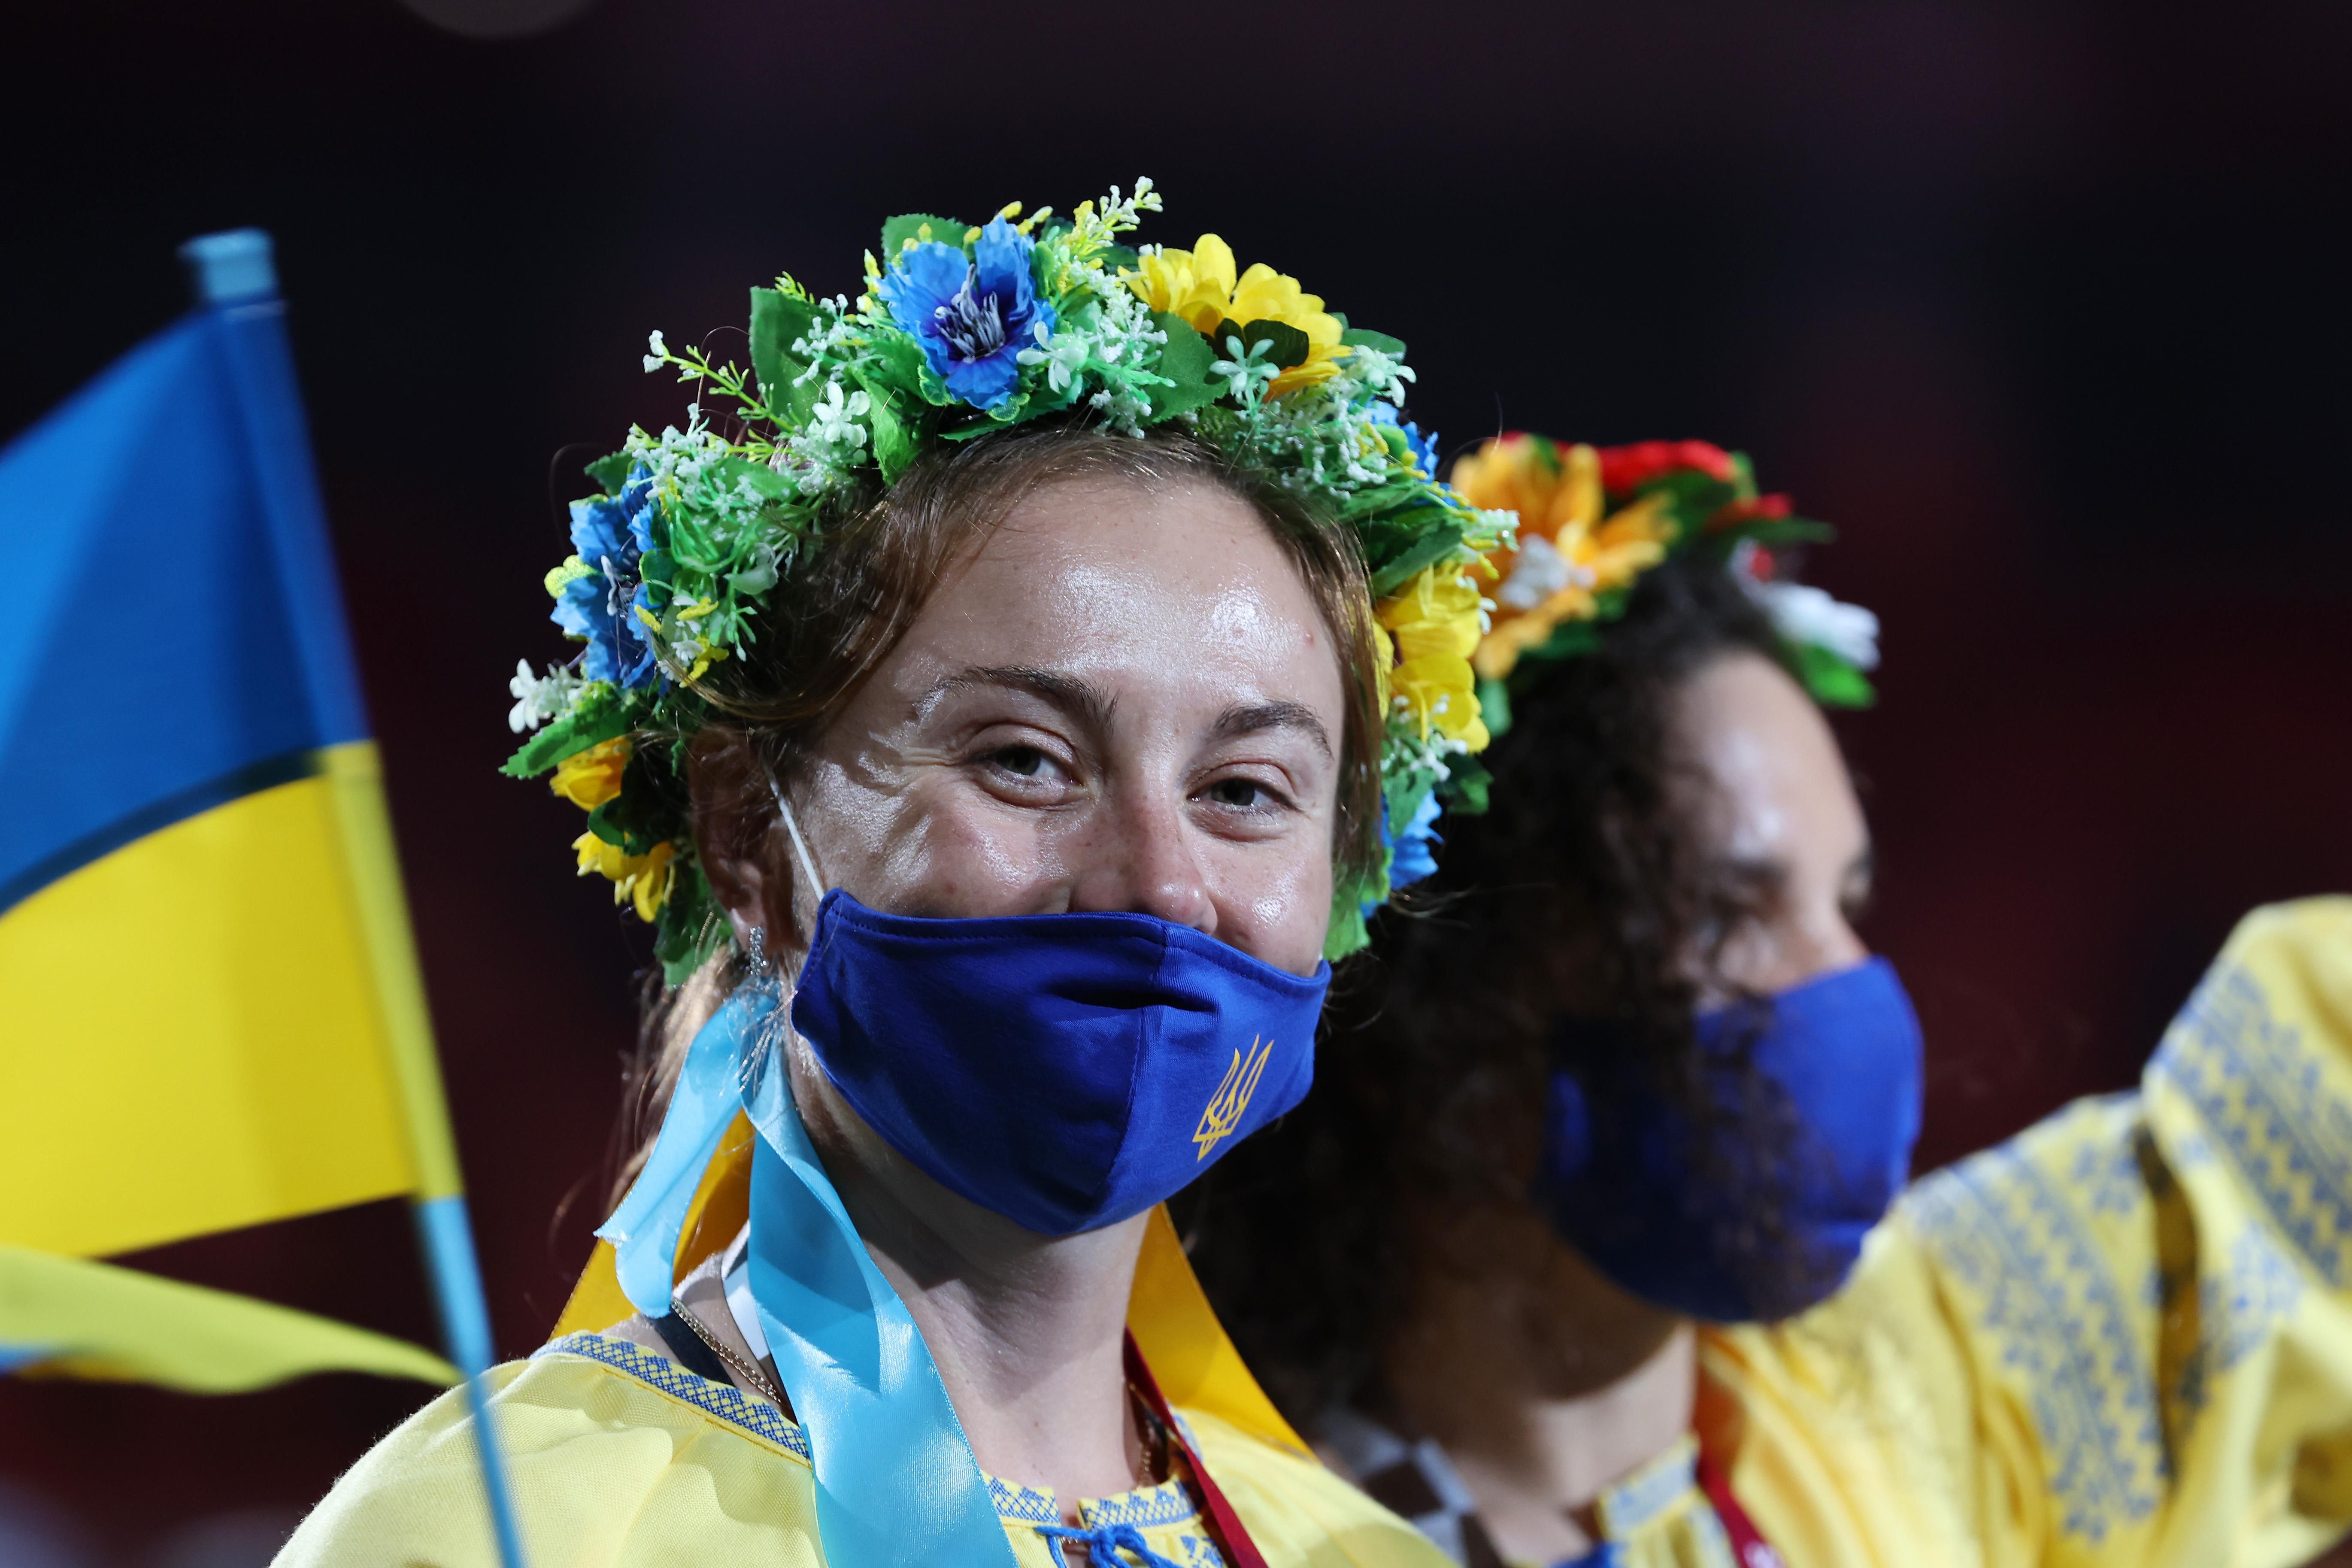 "Не имеют равных": издание The New York Times посвятило статью украинским паралимпийцам